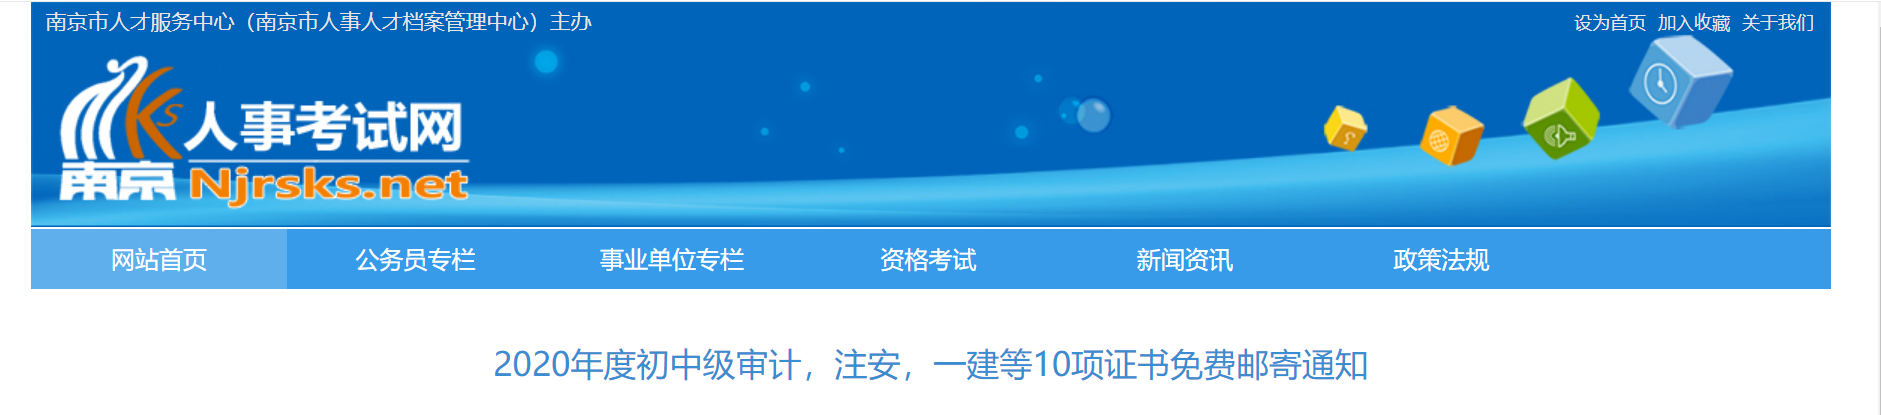 2020年江苏南京社会工作者证书免费邮寄通知